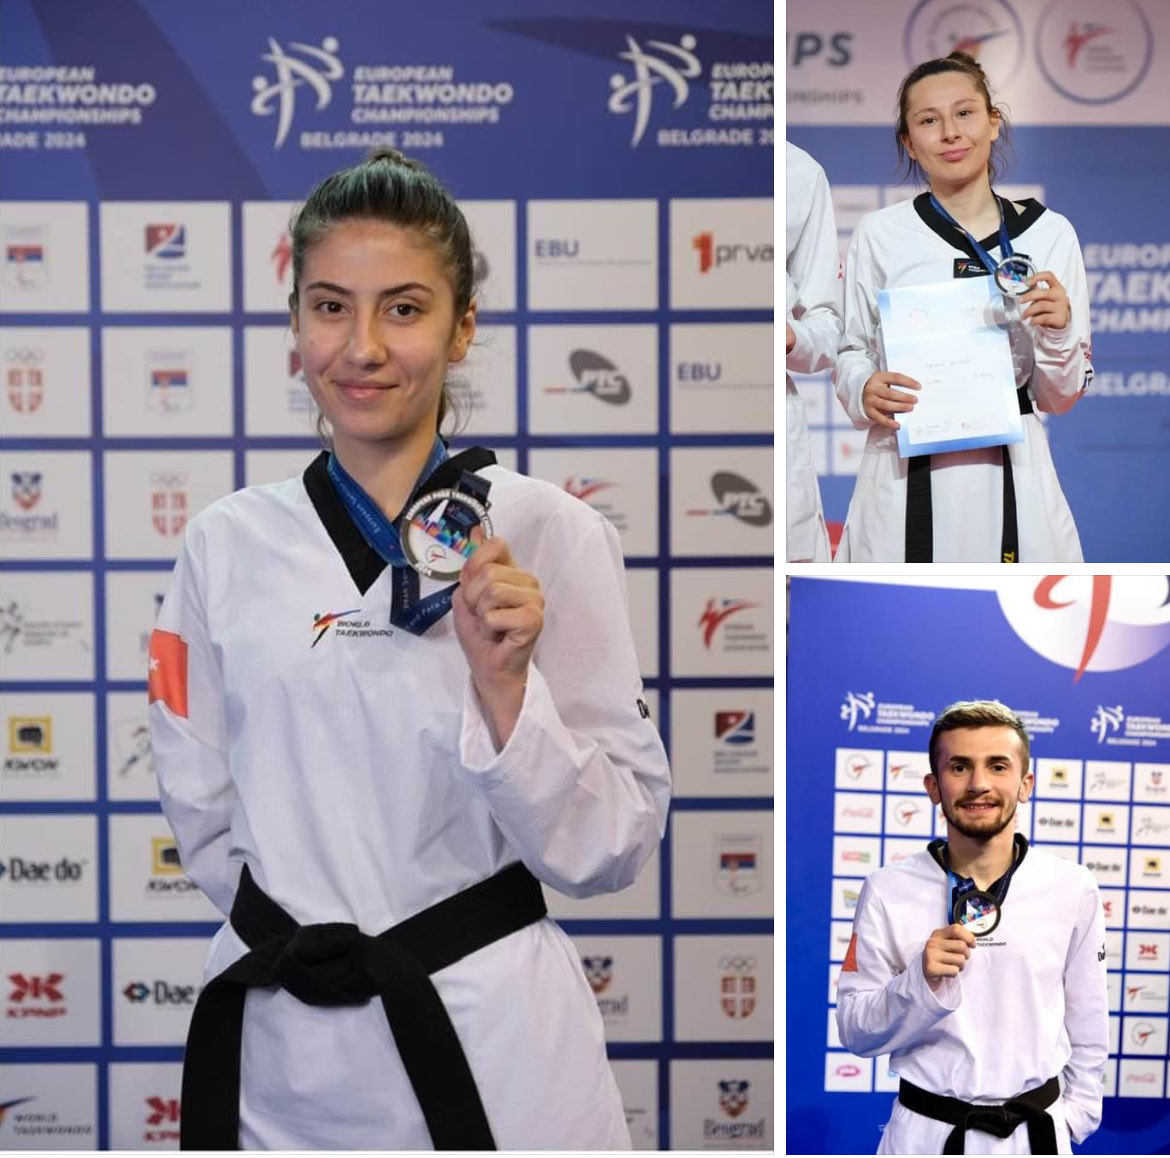 🇹🇷 Sırbistan'da düzenlenen 2024 Para Taekwondo Avrupa Şampiyonası'nda ;
EGOSPOR Sporcularımız; 
53 kg’da Zeynep Taşkın, 
58 kg’daAli Can Özcan ve 
52kg’da Meryem Betül Çavdar, Avrupa ikincisi olarak ülkemize gümüş 🥈 madalya kazandırdılar
Tebrikler…